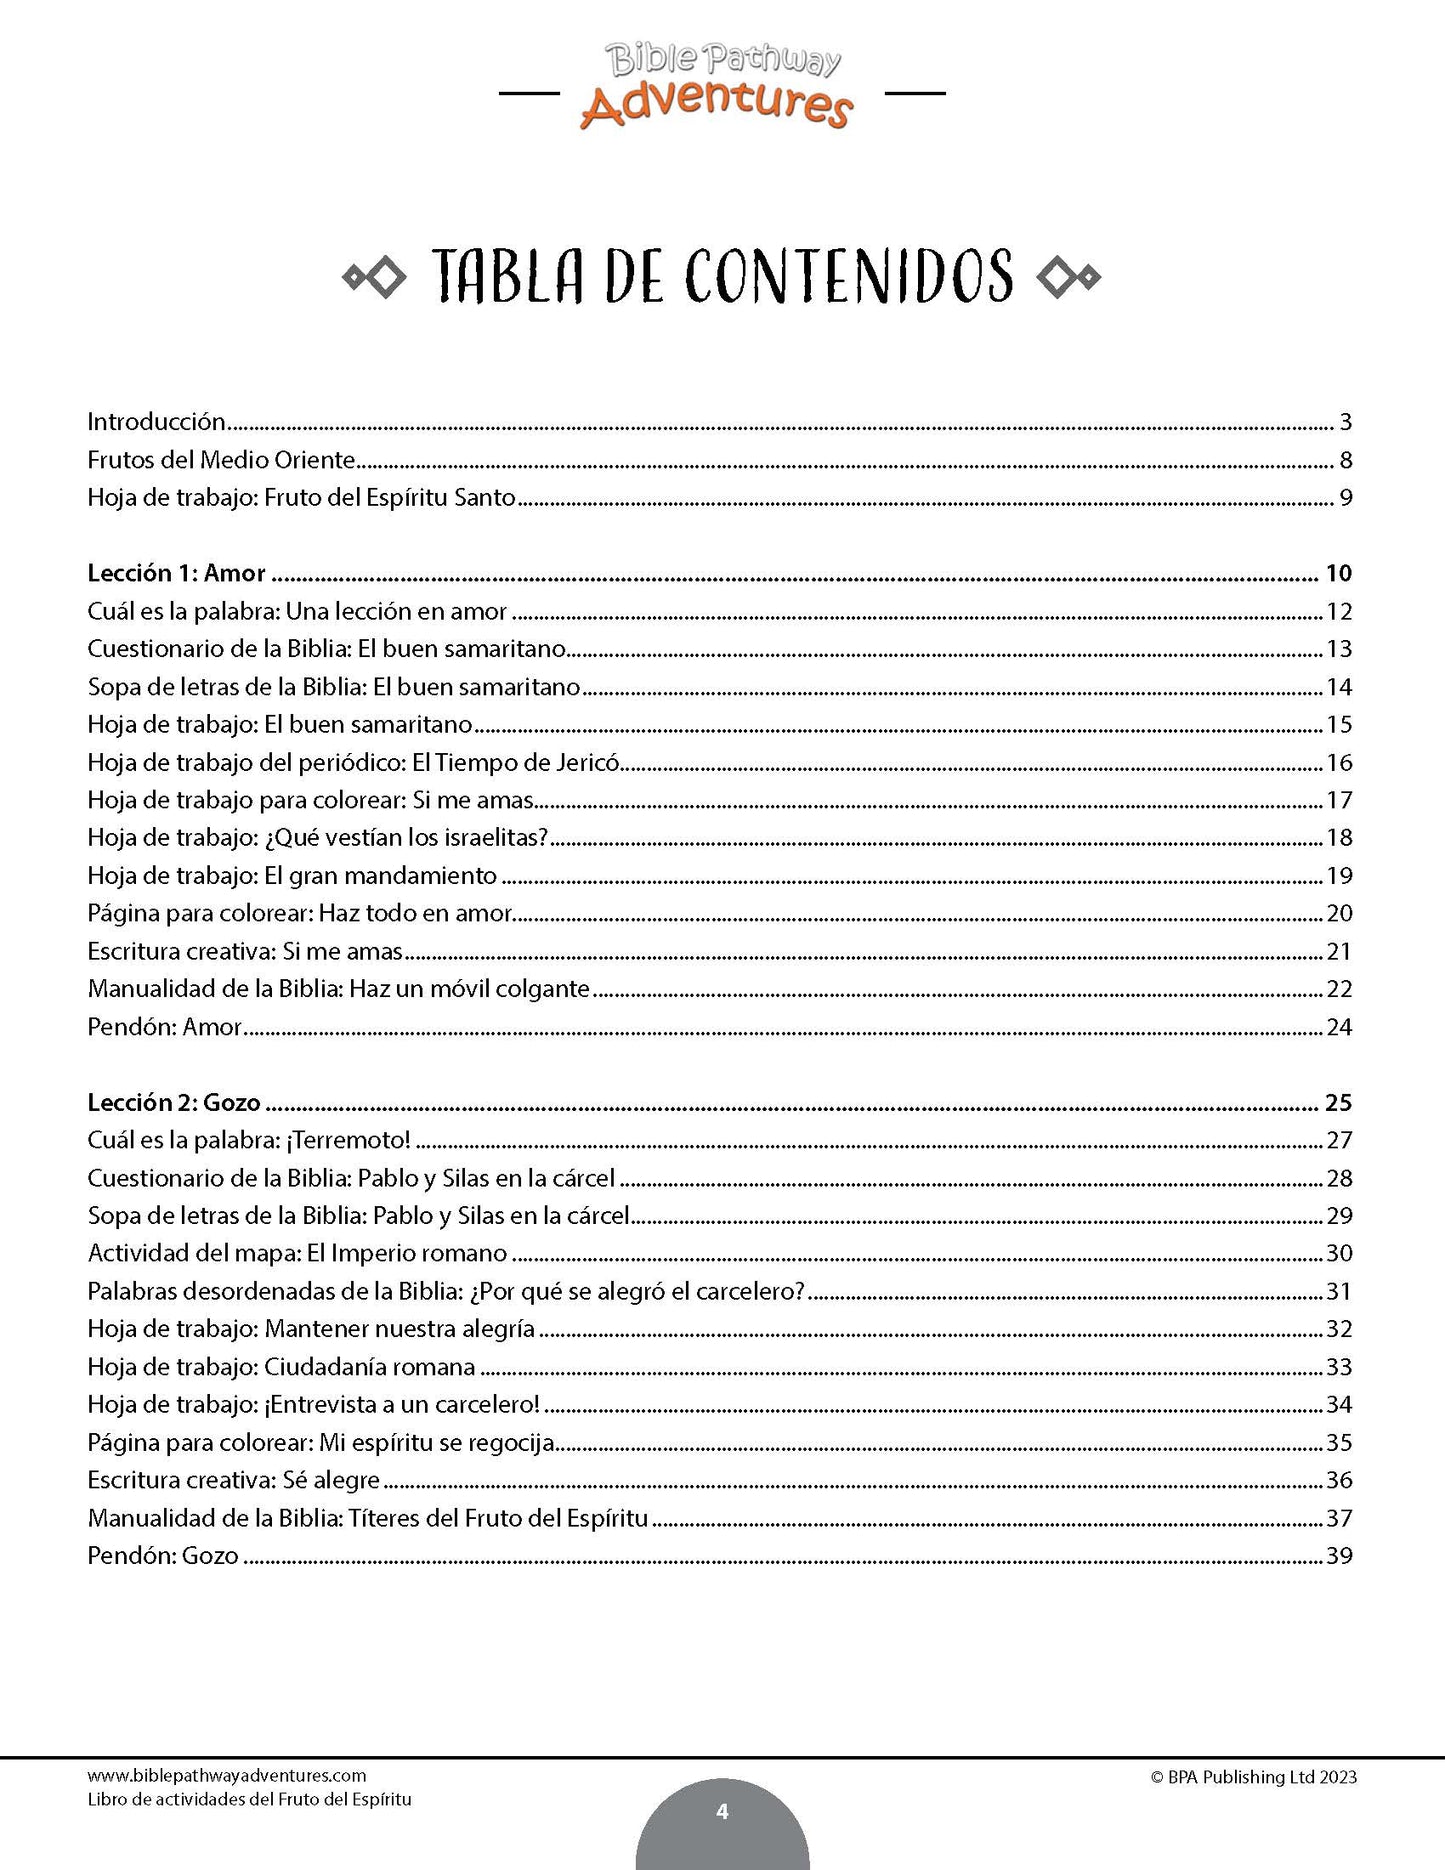 BUNDLE: El Fruto del Espíritu: Libros de Actividades (PDF)